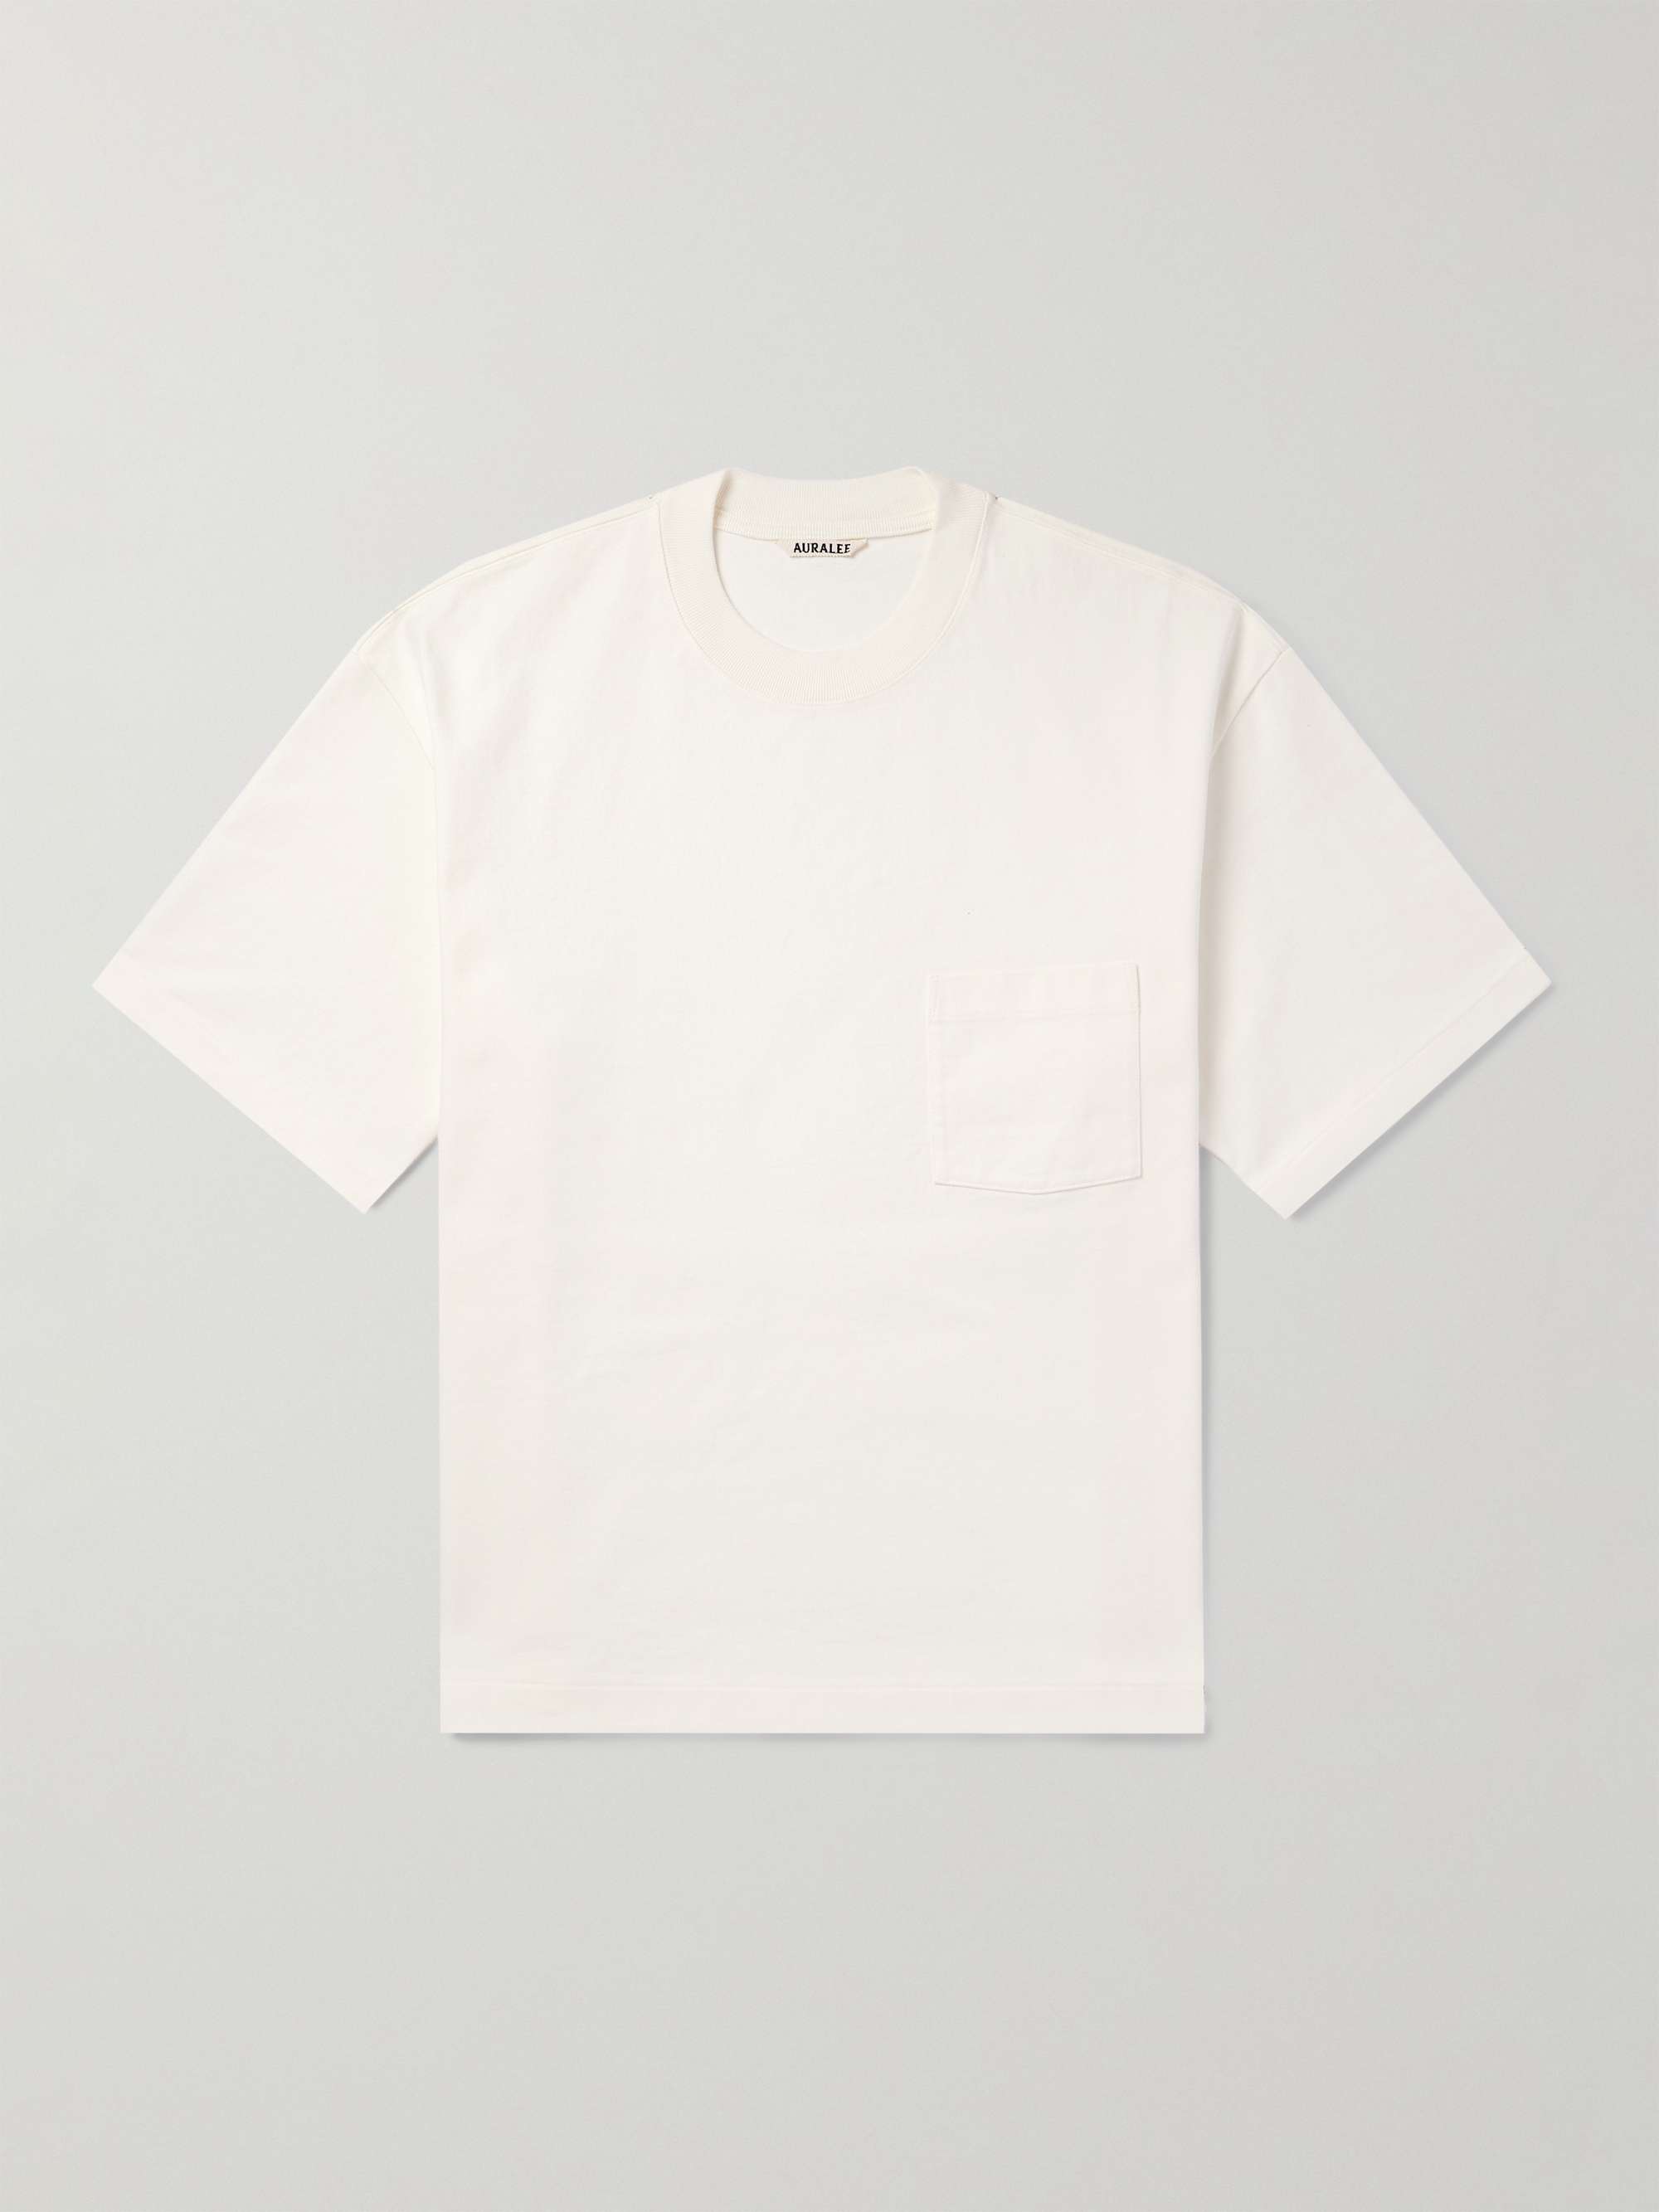 3D Pocket Monogram Cotton T-Shirt - Luxury Blue